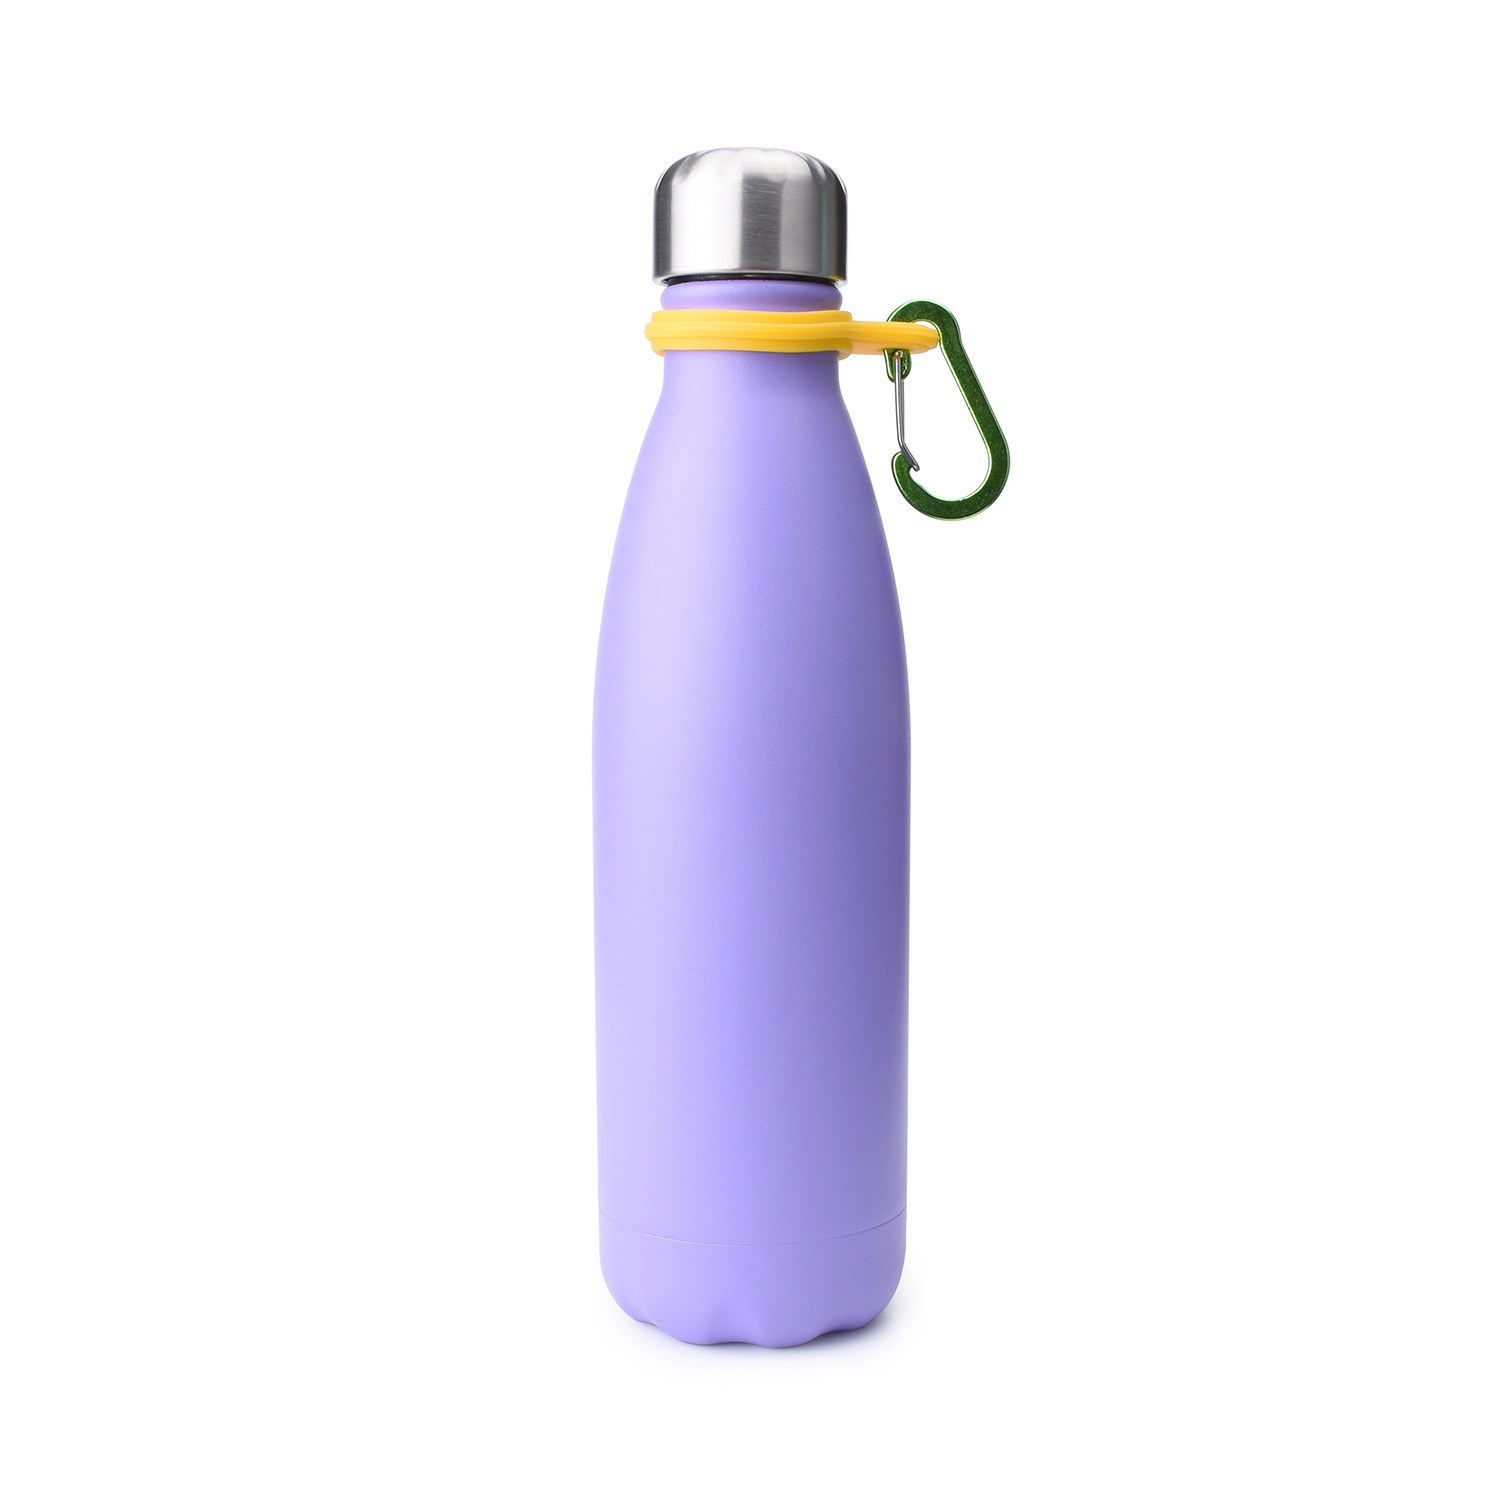 https://www.waterbottle.tech/wp-content/uploads/2018/10/water-bottle-with-carabiner-500-ml-S121799-1.jpg